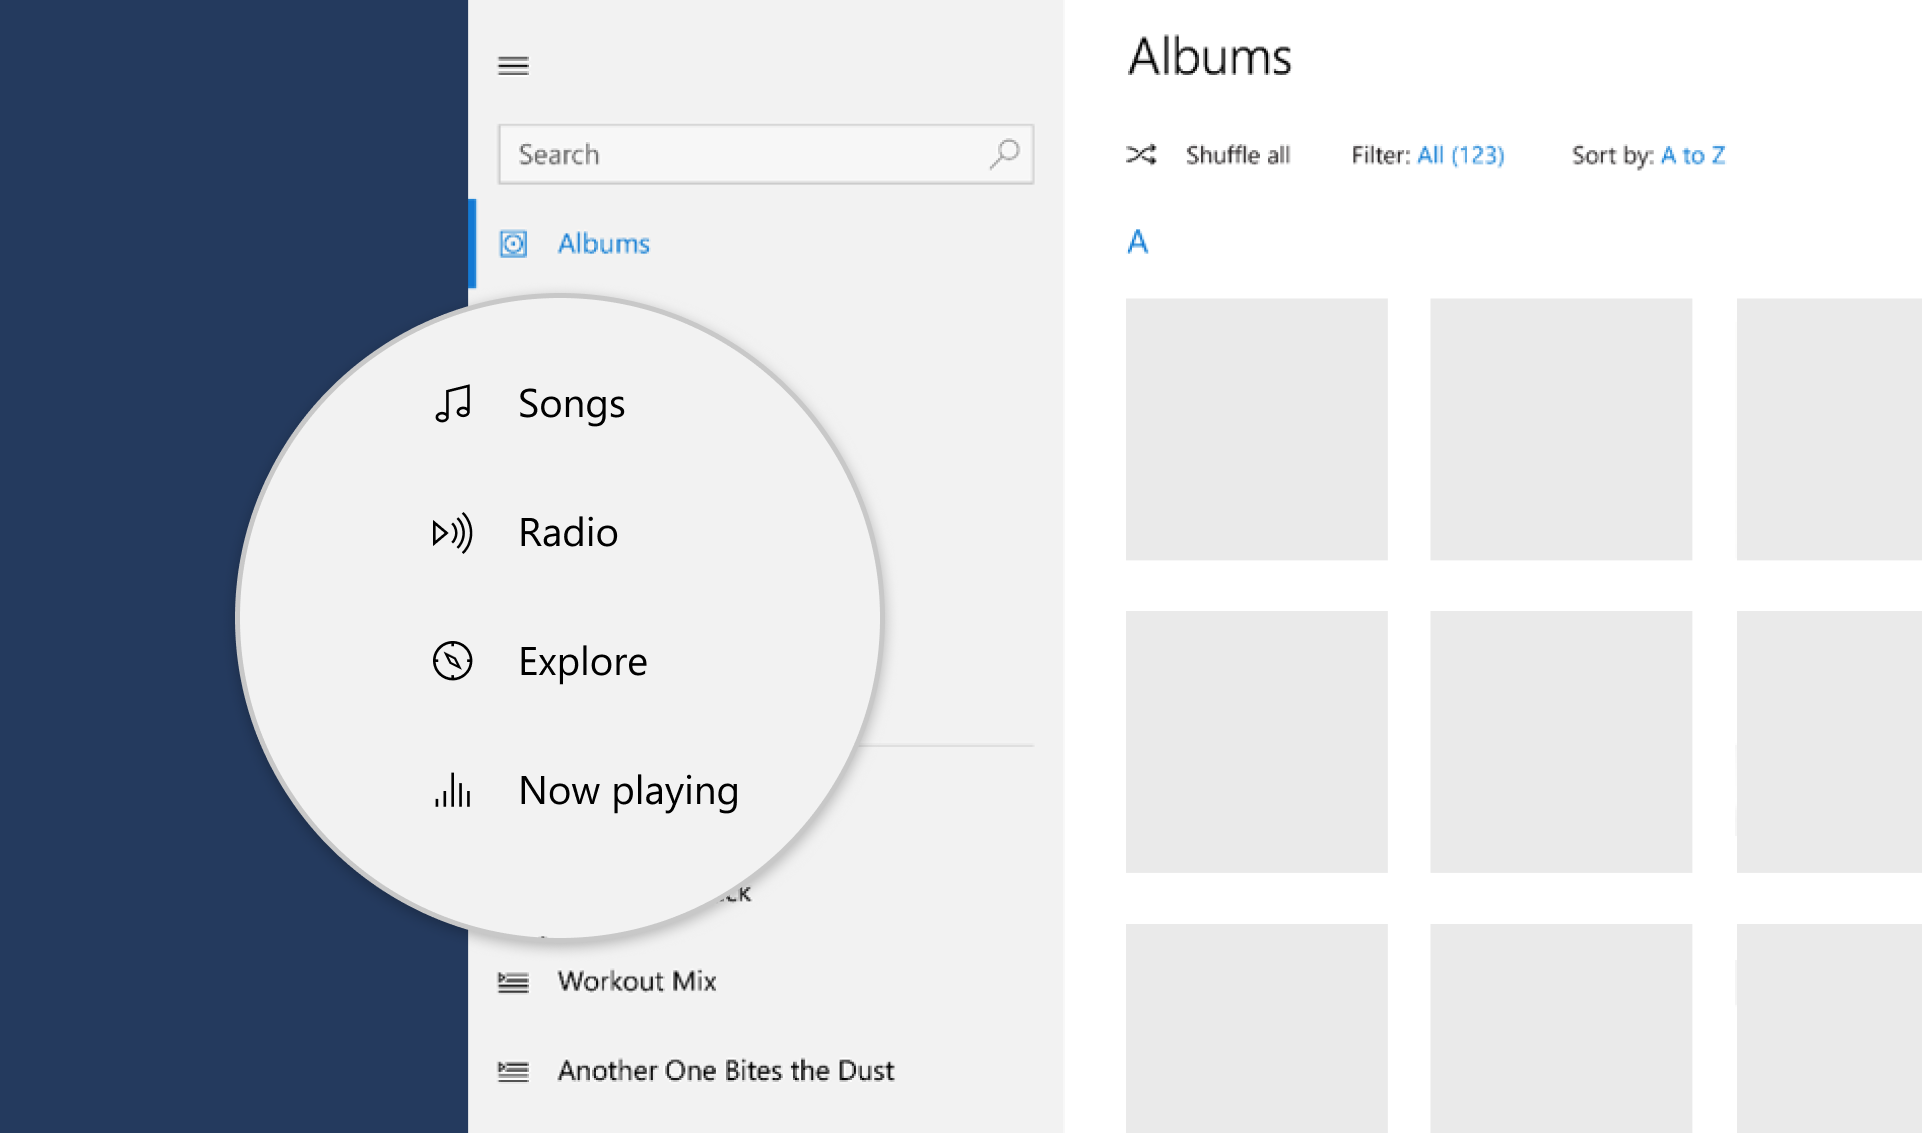 Captura de tela dos ícones em um aplicativo de música.